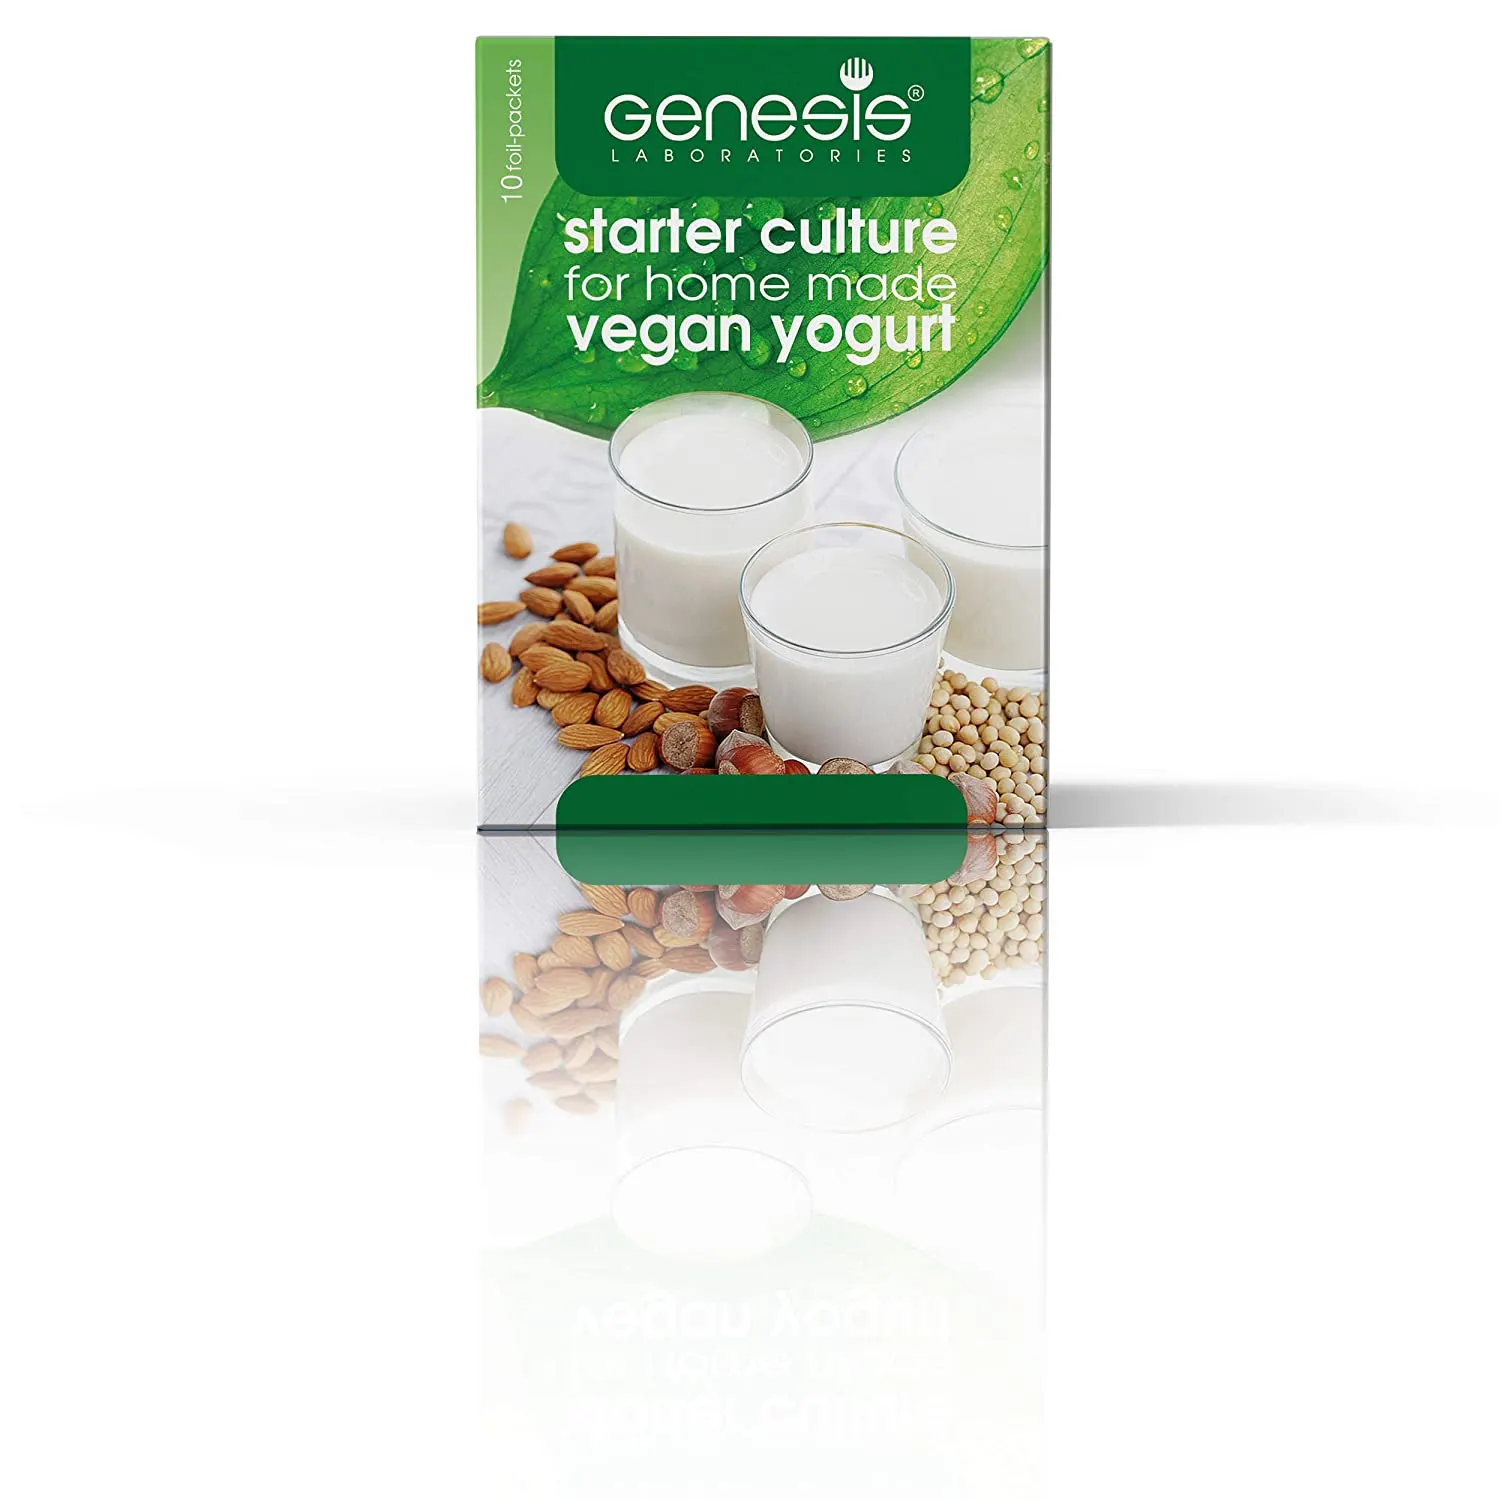 Genesis Vegan Starter Culture for Vegan Home Made Yogurt